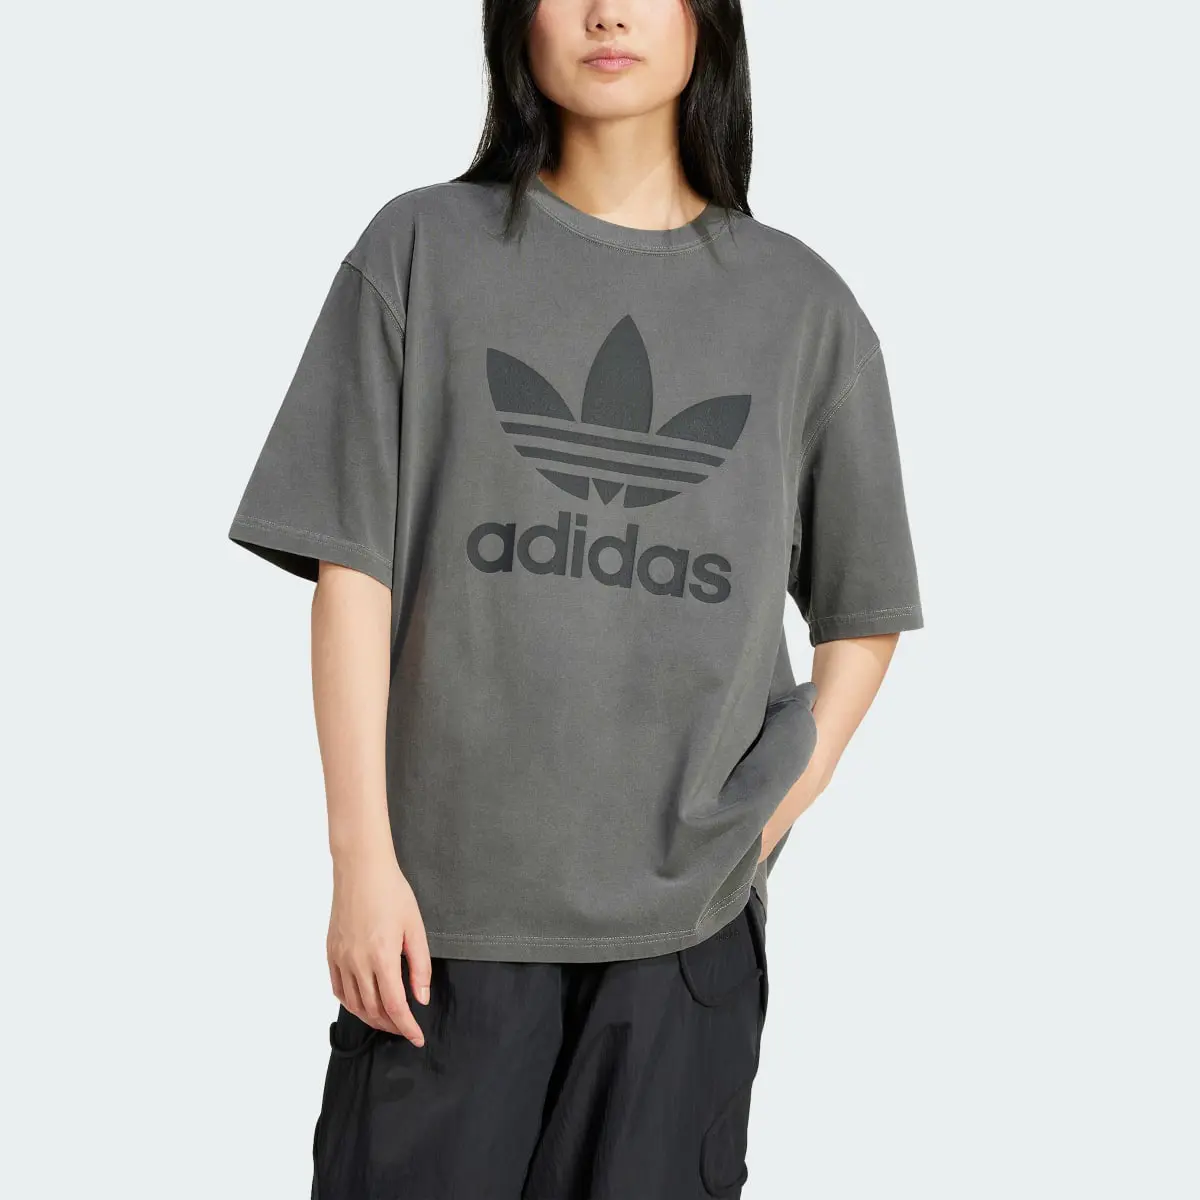 Adidas T-shirt Trèfle délavé. 1